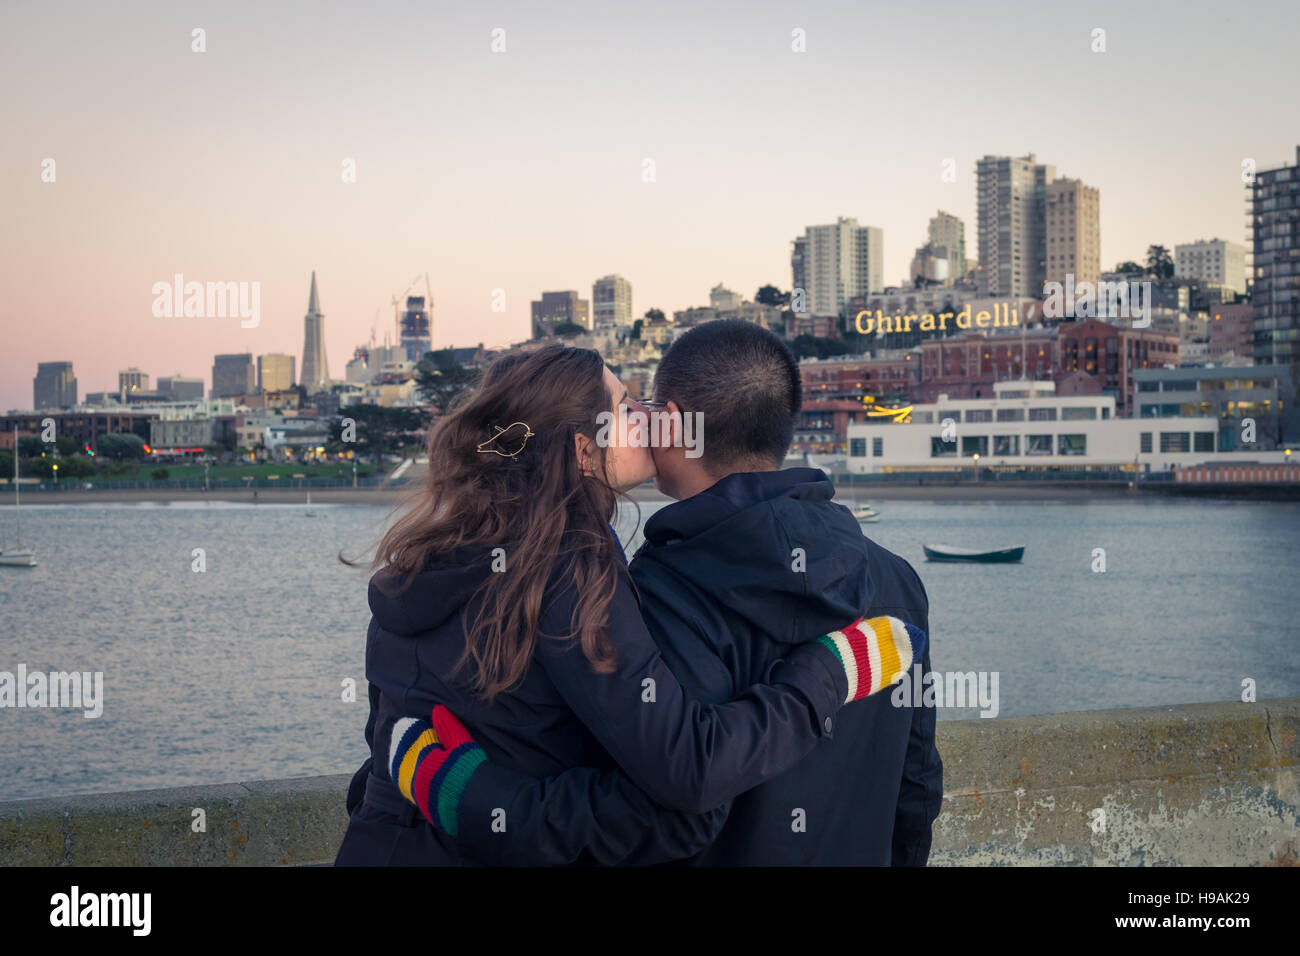 Un jeune couple amoureux au parc Pier, à l'Aquatic Park Bathhouse, Ghirardelli Square et l'horizon de San Francisco. Banque D'Images